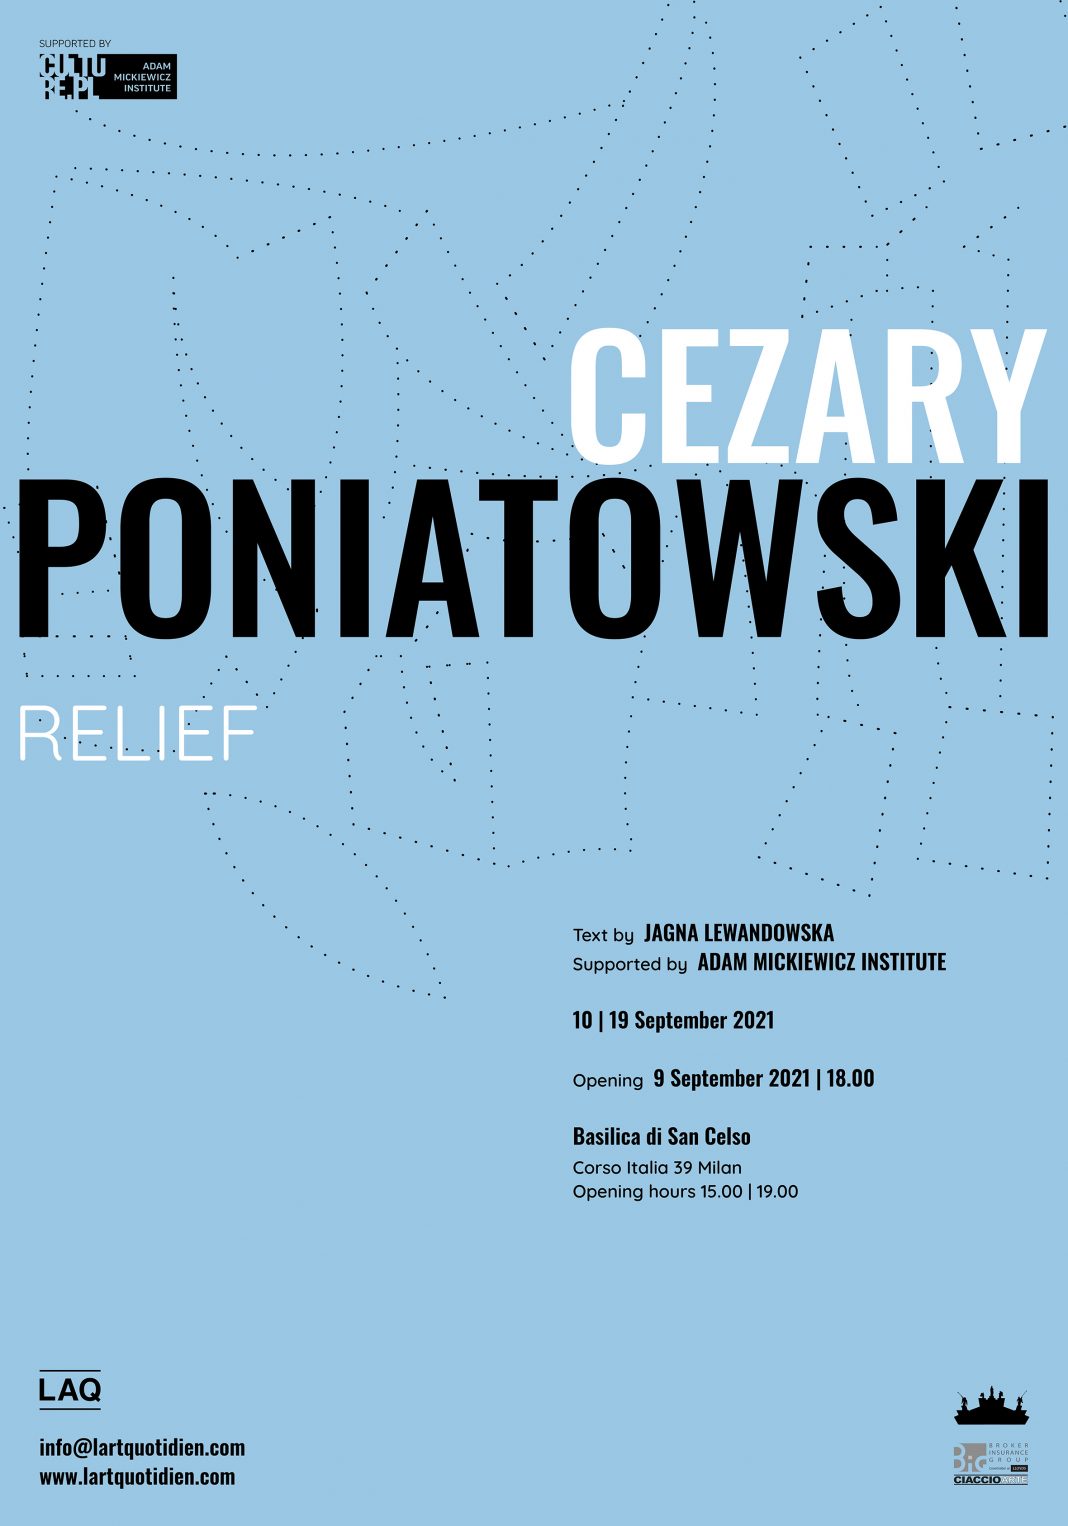 Cezary Poniatowski – Reliefhttps://www.exibart.com/repository/media/formidable/11/img/1c3/Poniatowski_DEF-1068x1526.jpg